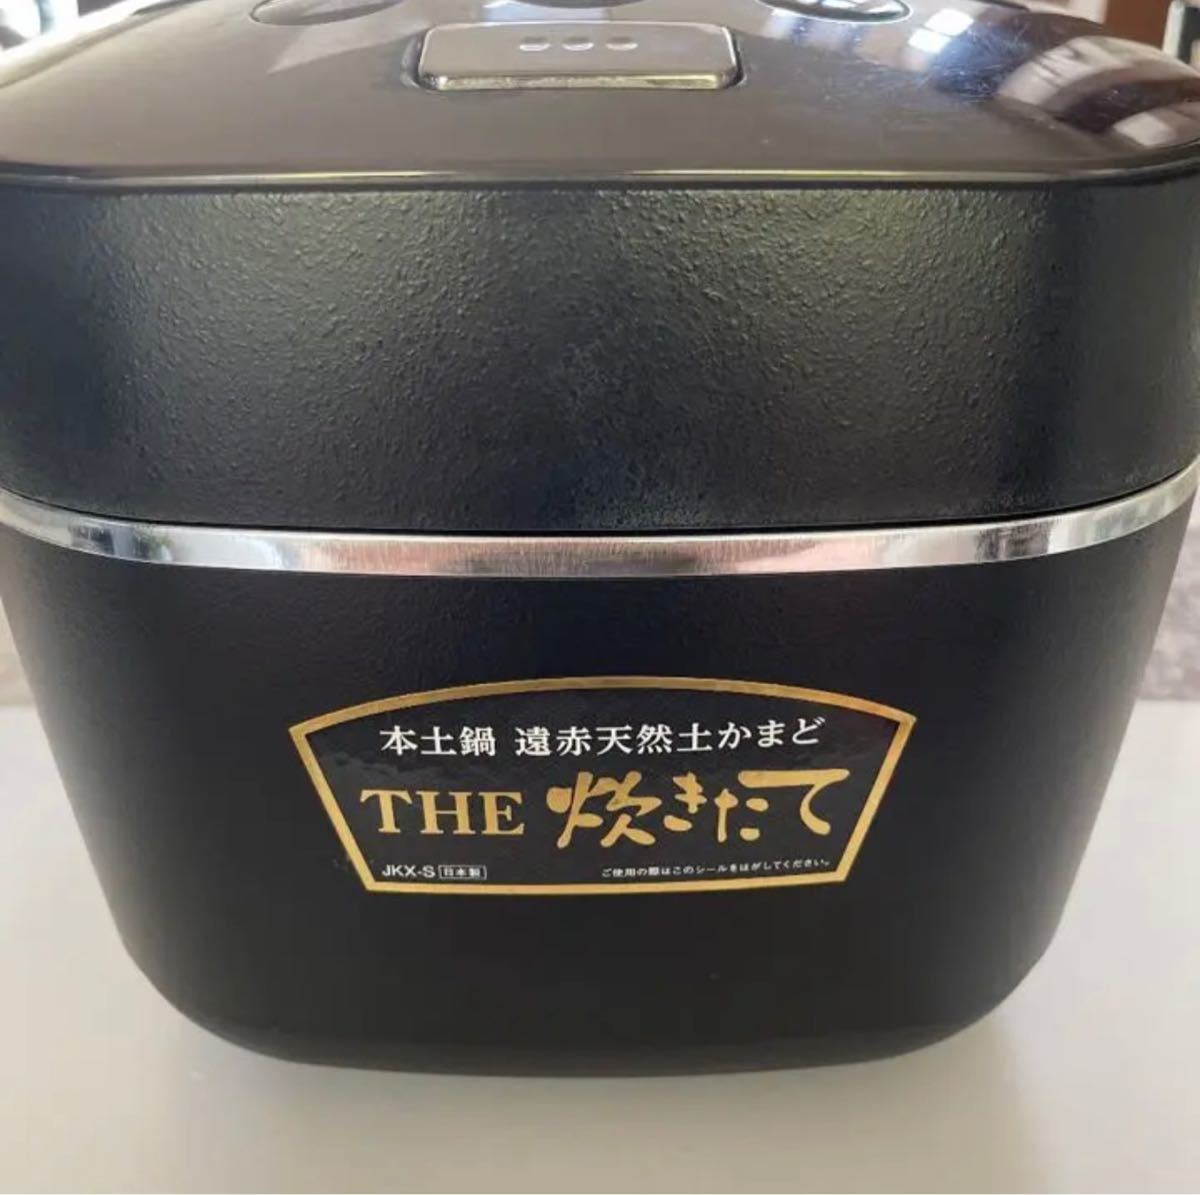 タイガー魔法瓶 JKX-S100(KM) 炊飯器